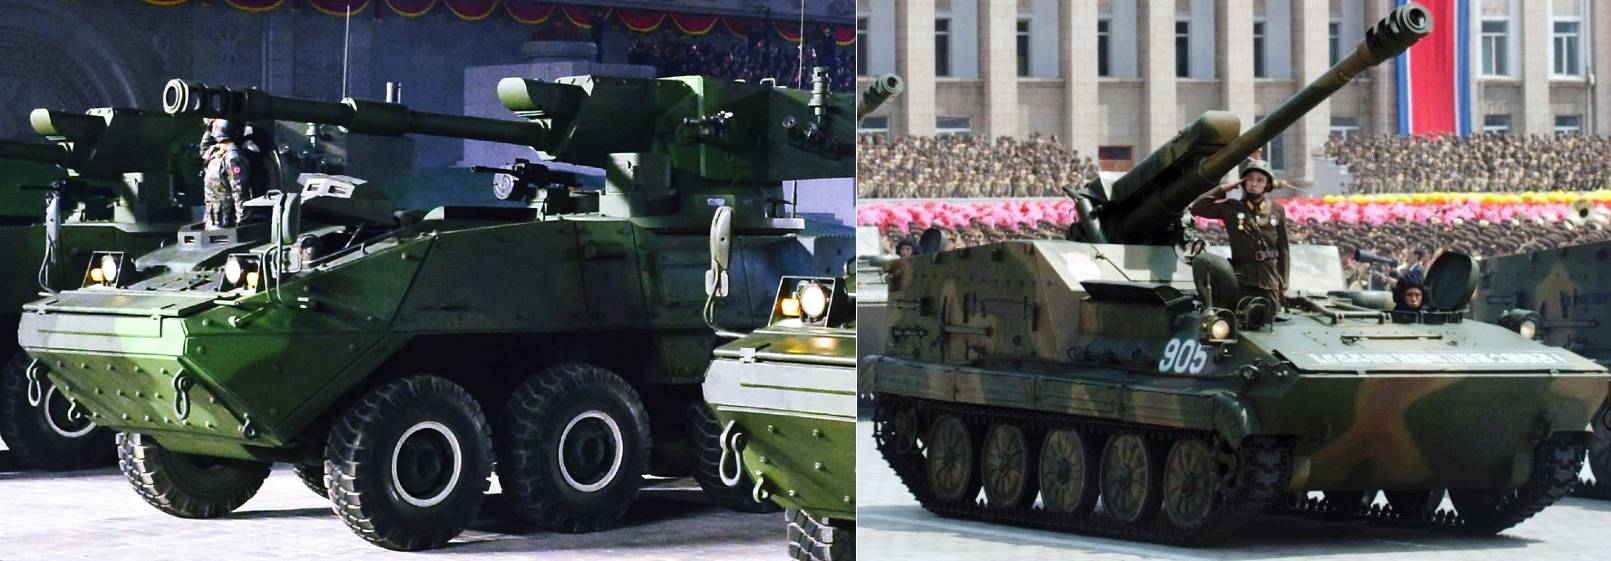 (좌) 북한군 M-2020 기동포와 (우) M-1985 122mm 자주포. 포신의 형상과 장경 등이 일치한다. <출처 : Public Domain>